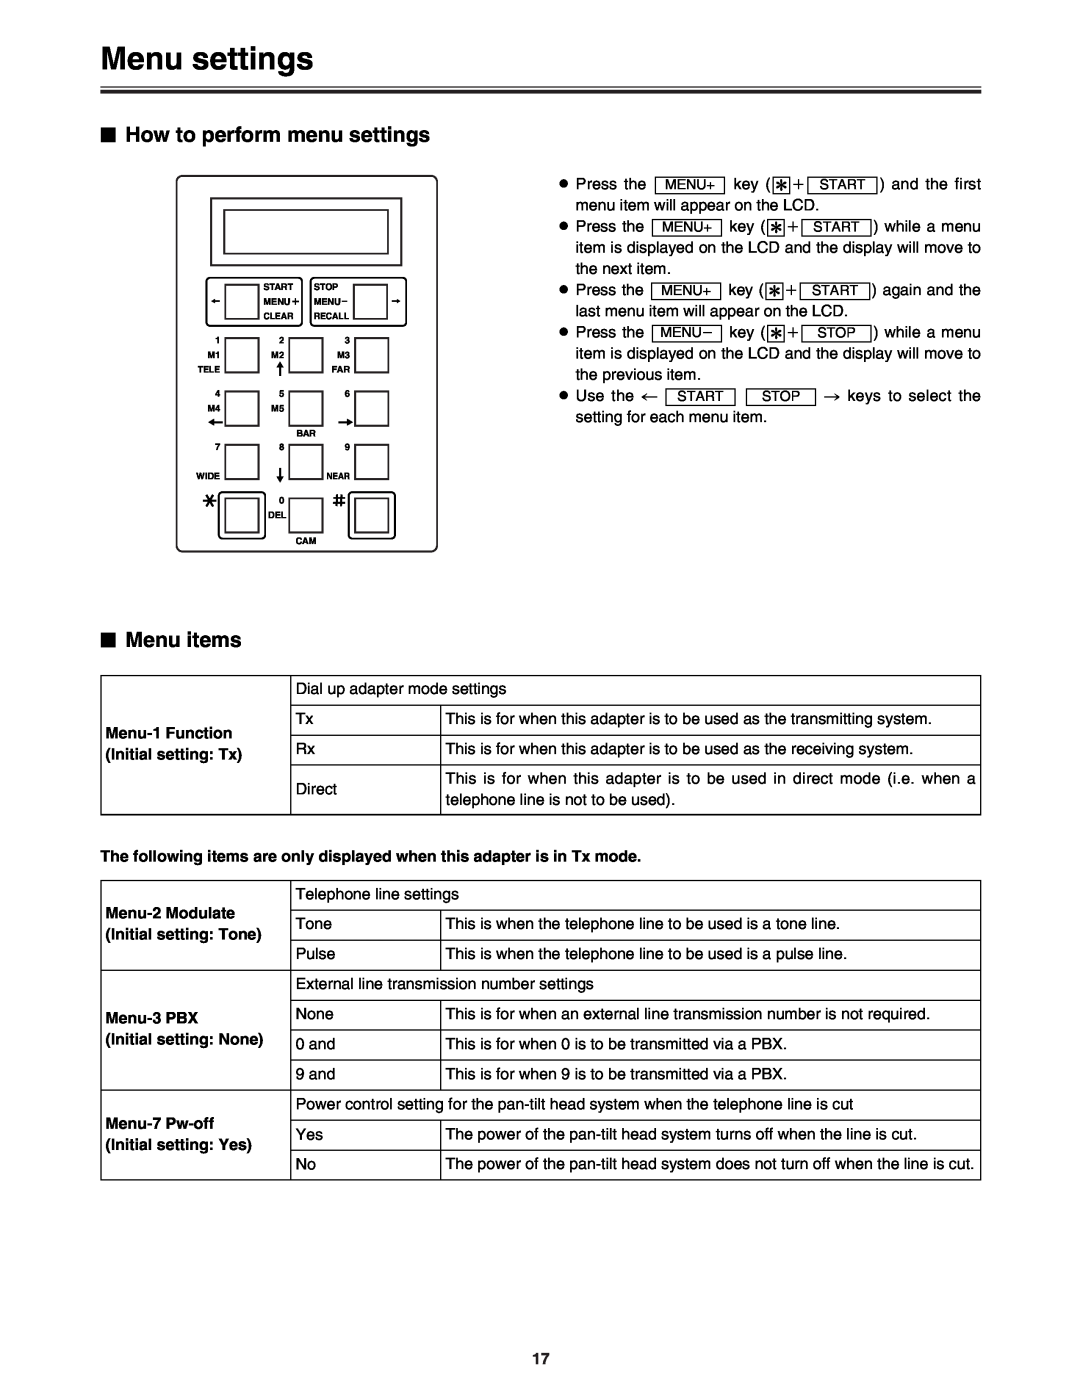 Panasonic AW-DU600 manual Menu settings, $ How to perform menu settings, $ Menu items 